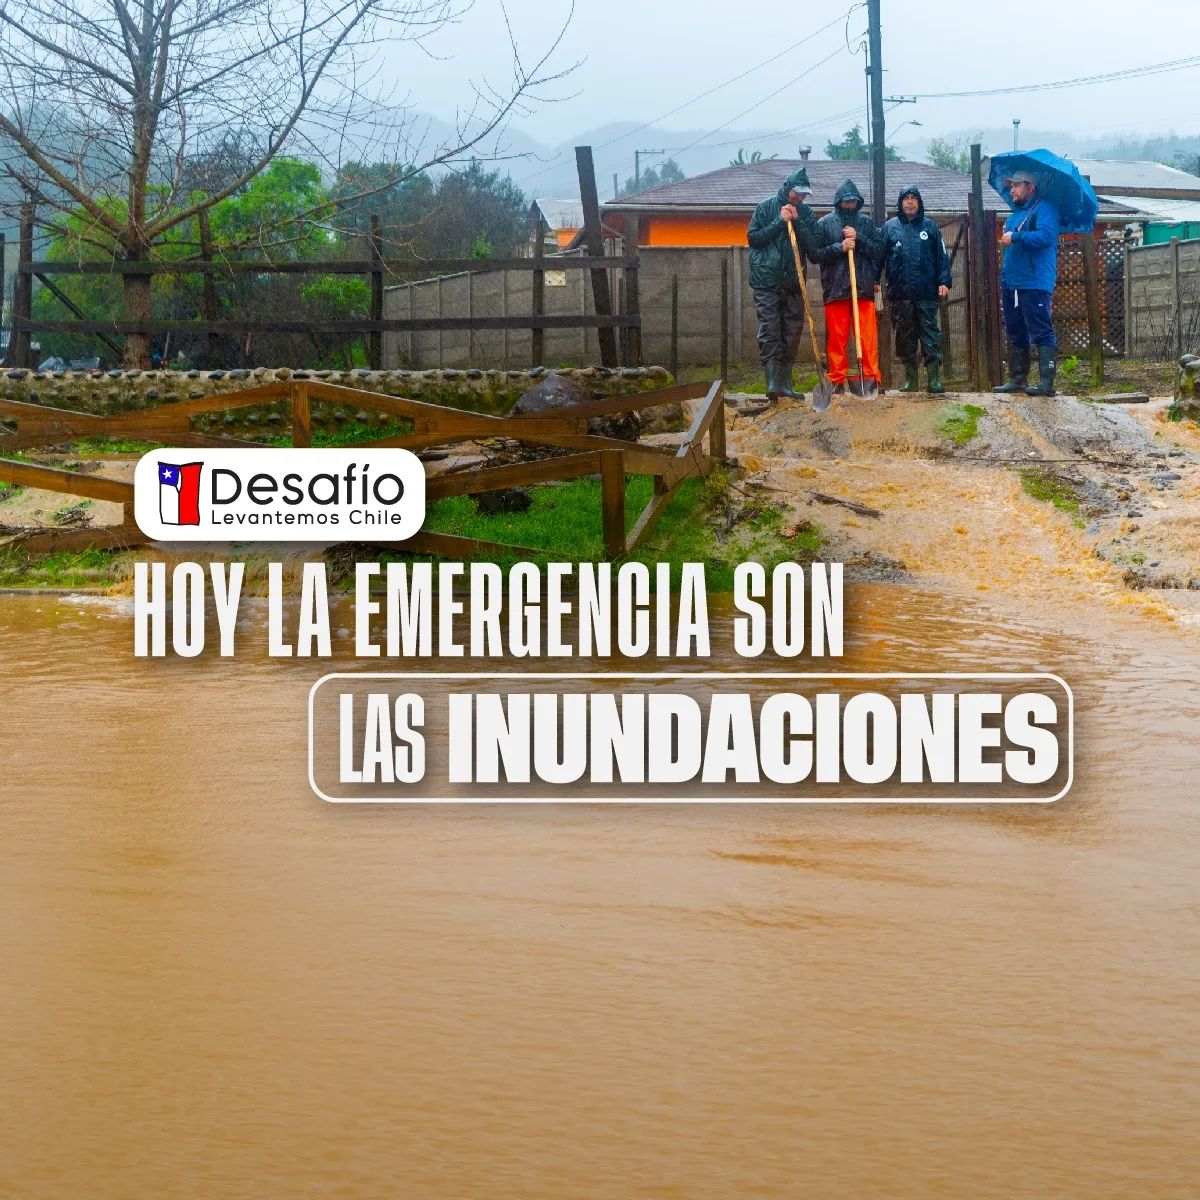 Desafío Levantemos Chile: Cómo ayudar en su campaña de recaudación por inundaciones